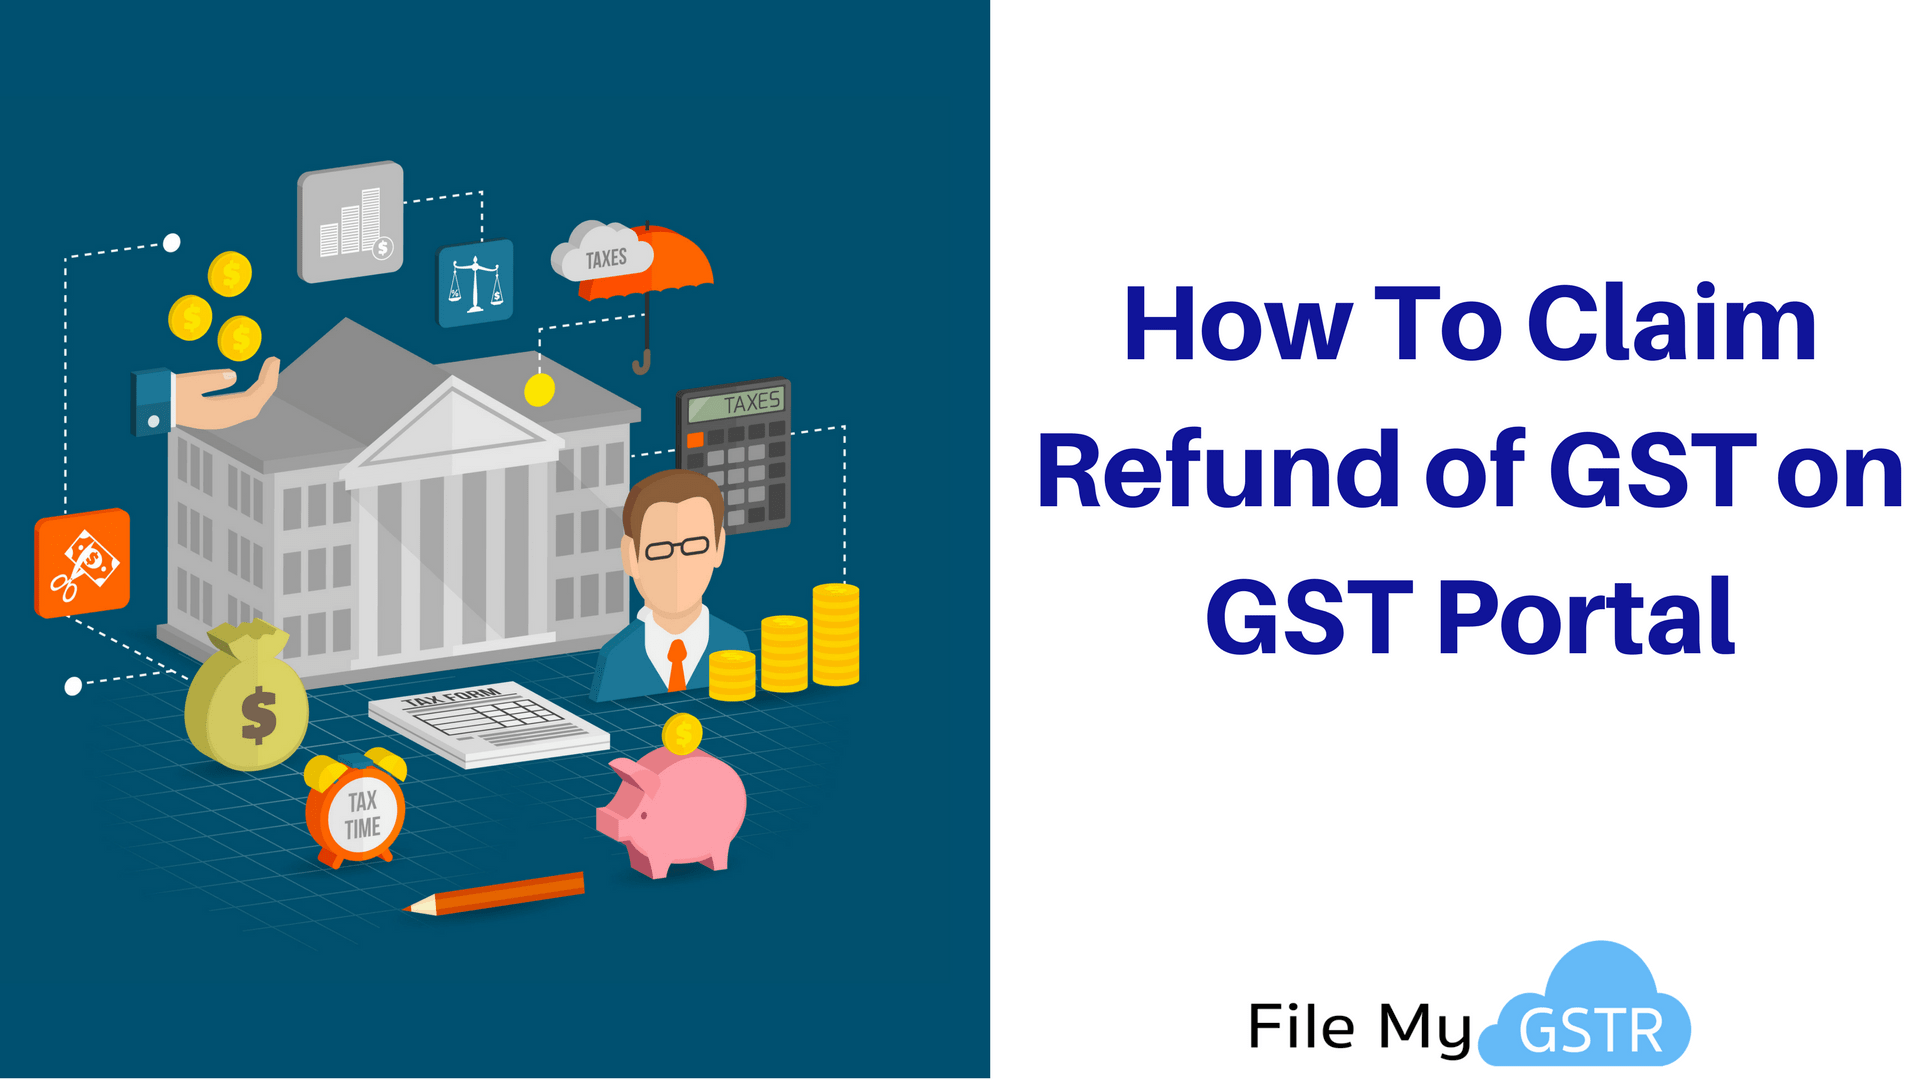 Refund of GST on GST Portal